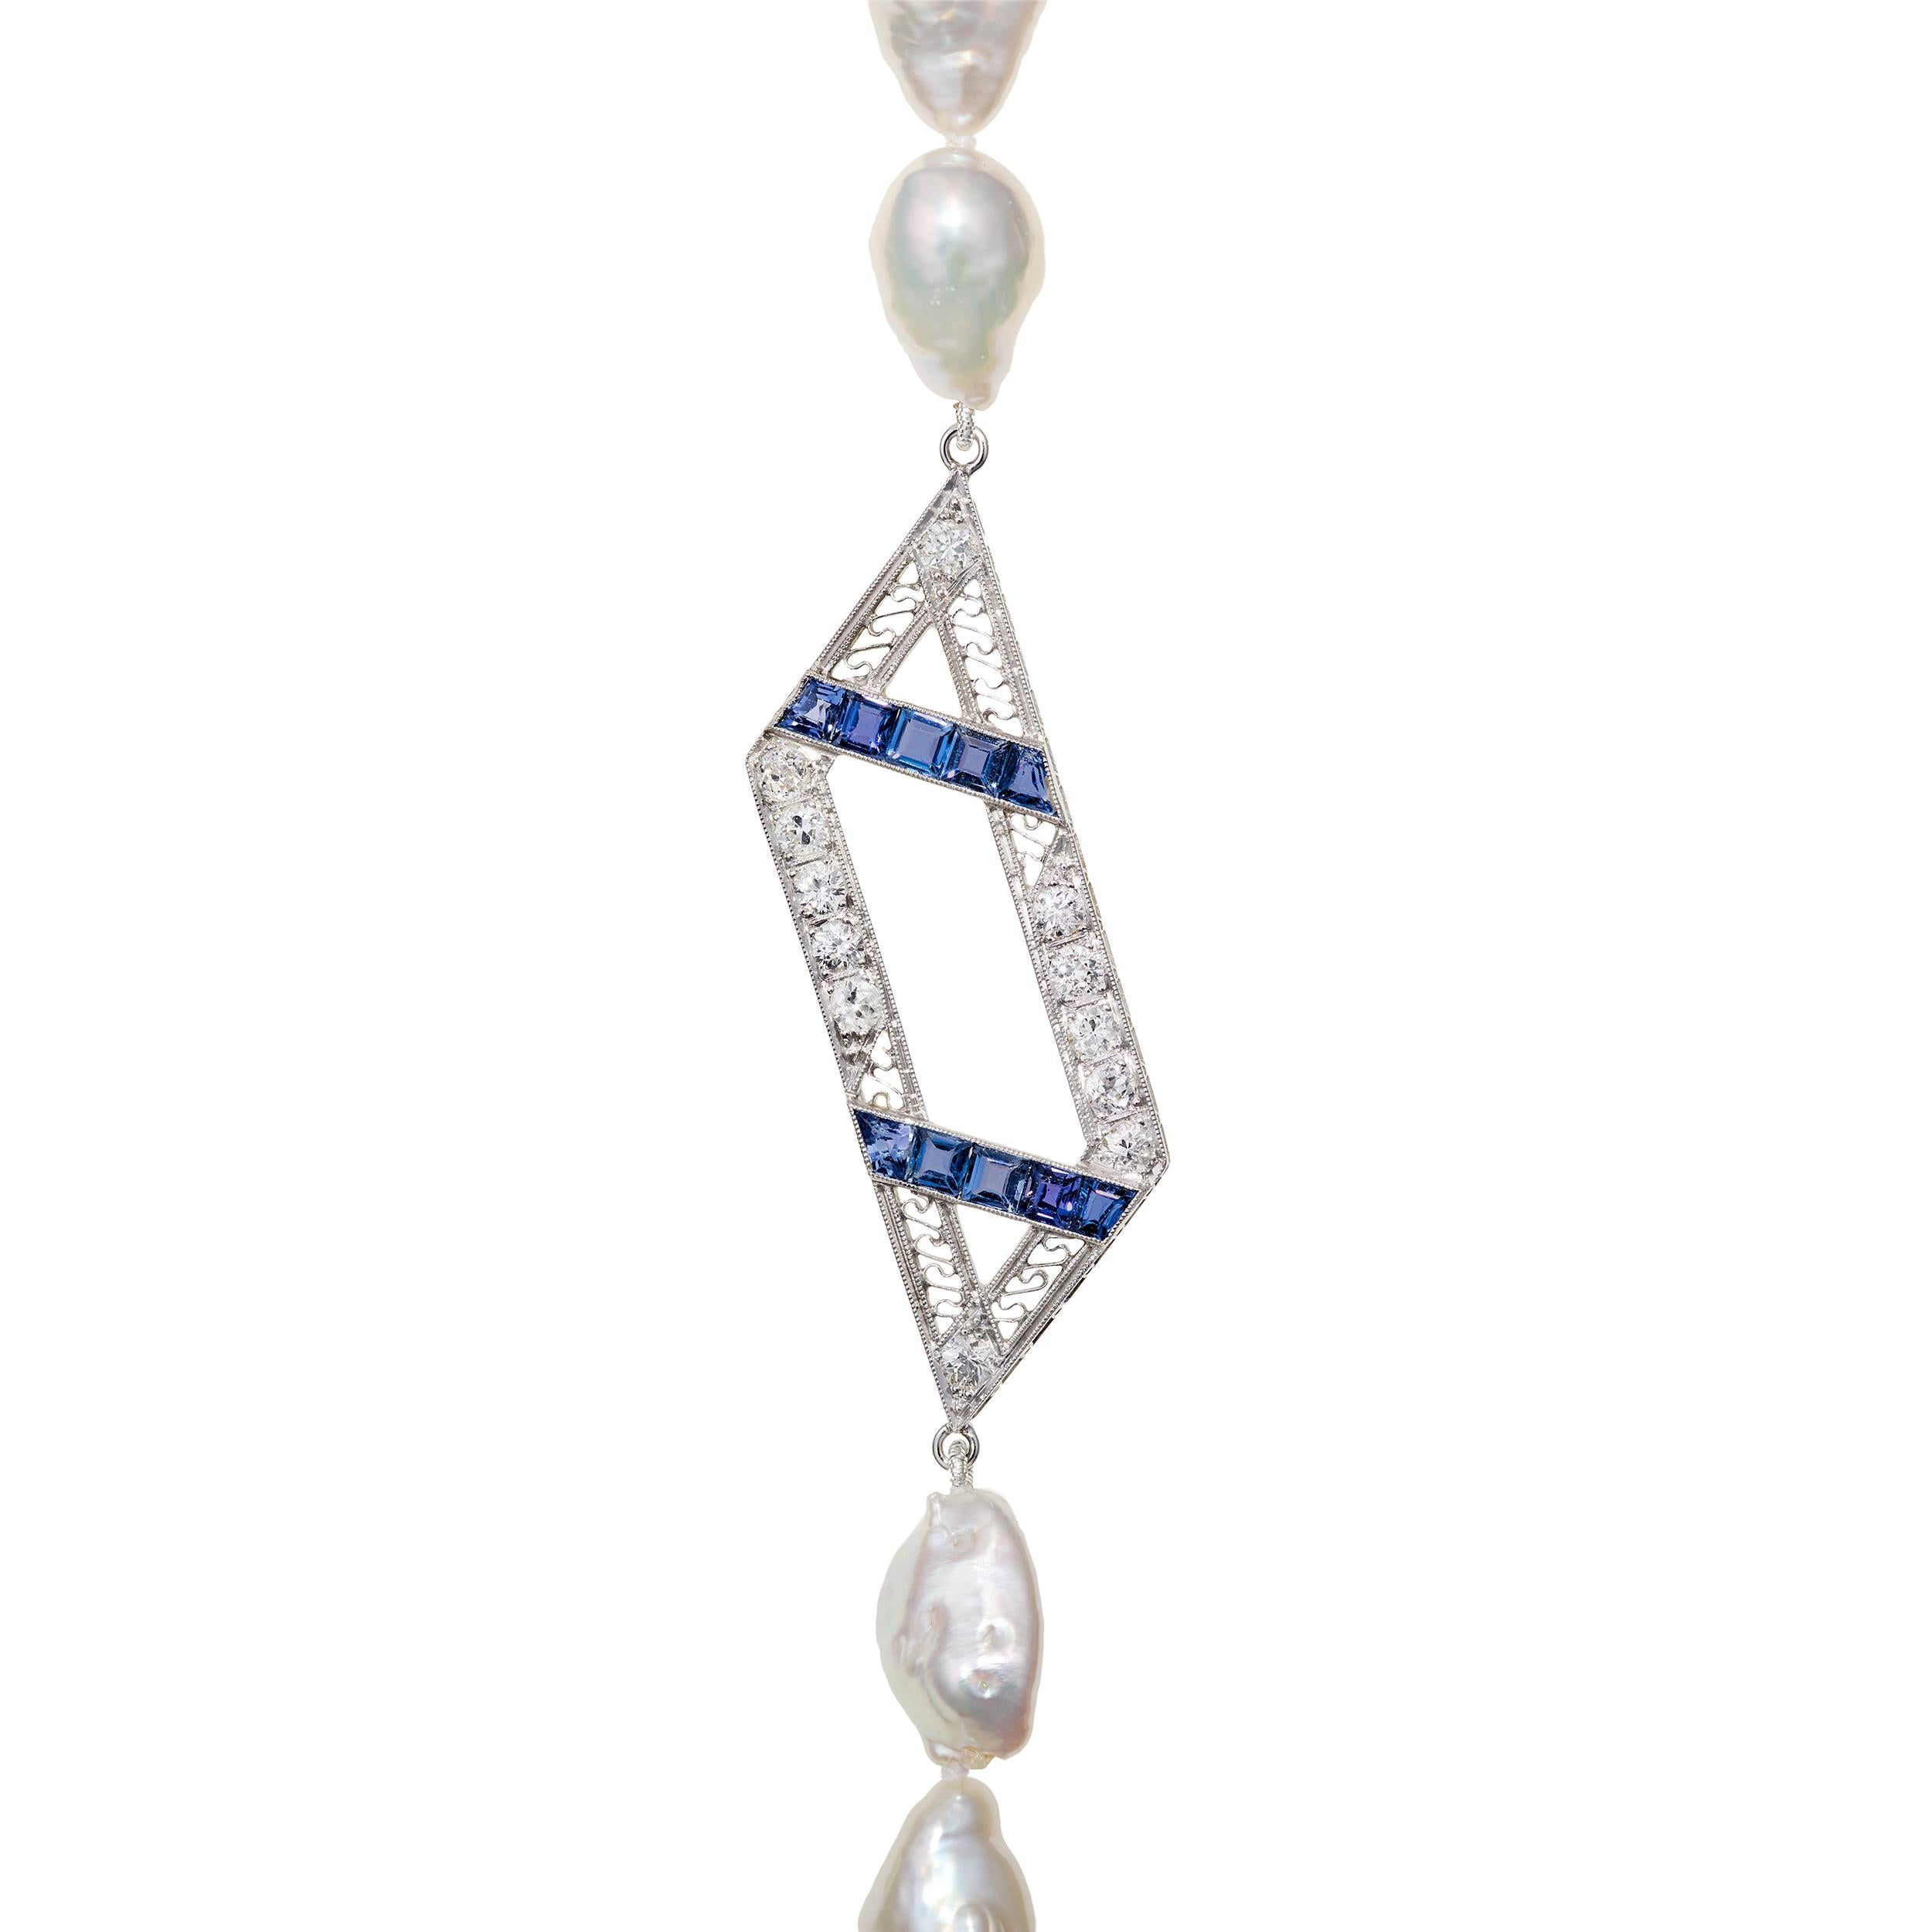 Wunderschöne lange Halskette mit einem atemberaubenden Art-Déco-Schwerpunkt.  Einzigartig und handgeknüpft zwischen jeder Perle.

Saphir und Diamant Brennpunkt Gewicht ca. 3,5 Karat Gesamtgewicht
(53) Südsee-Keshi-Perlen

Länge:  35